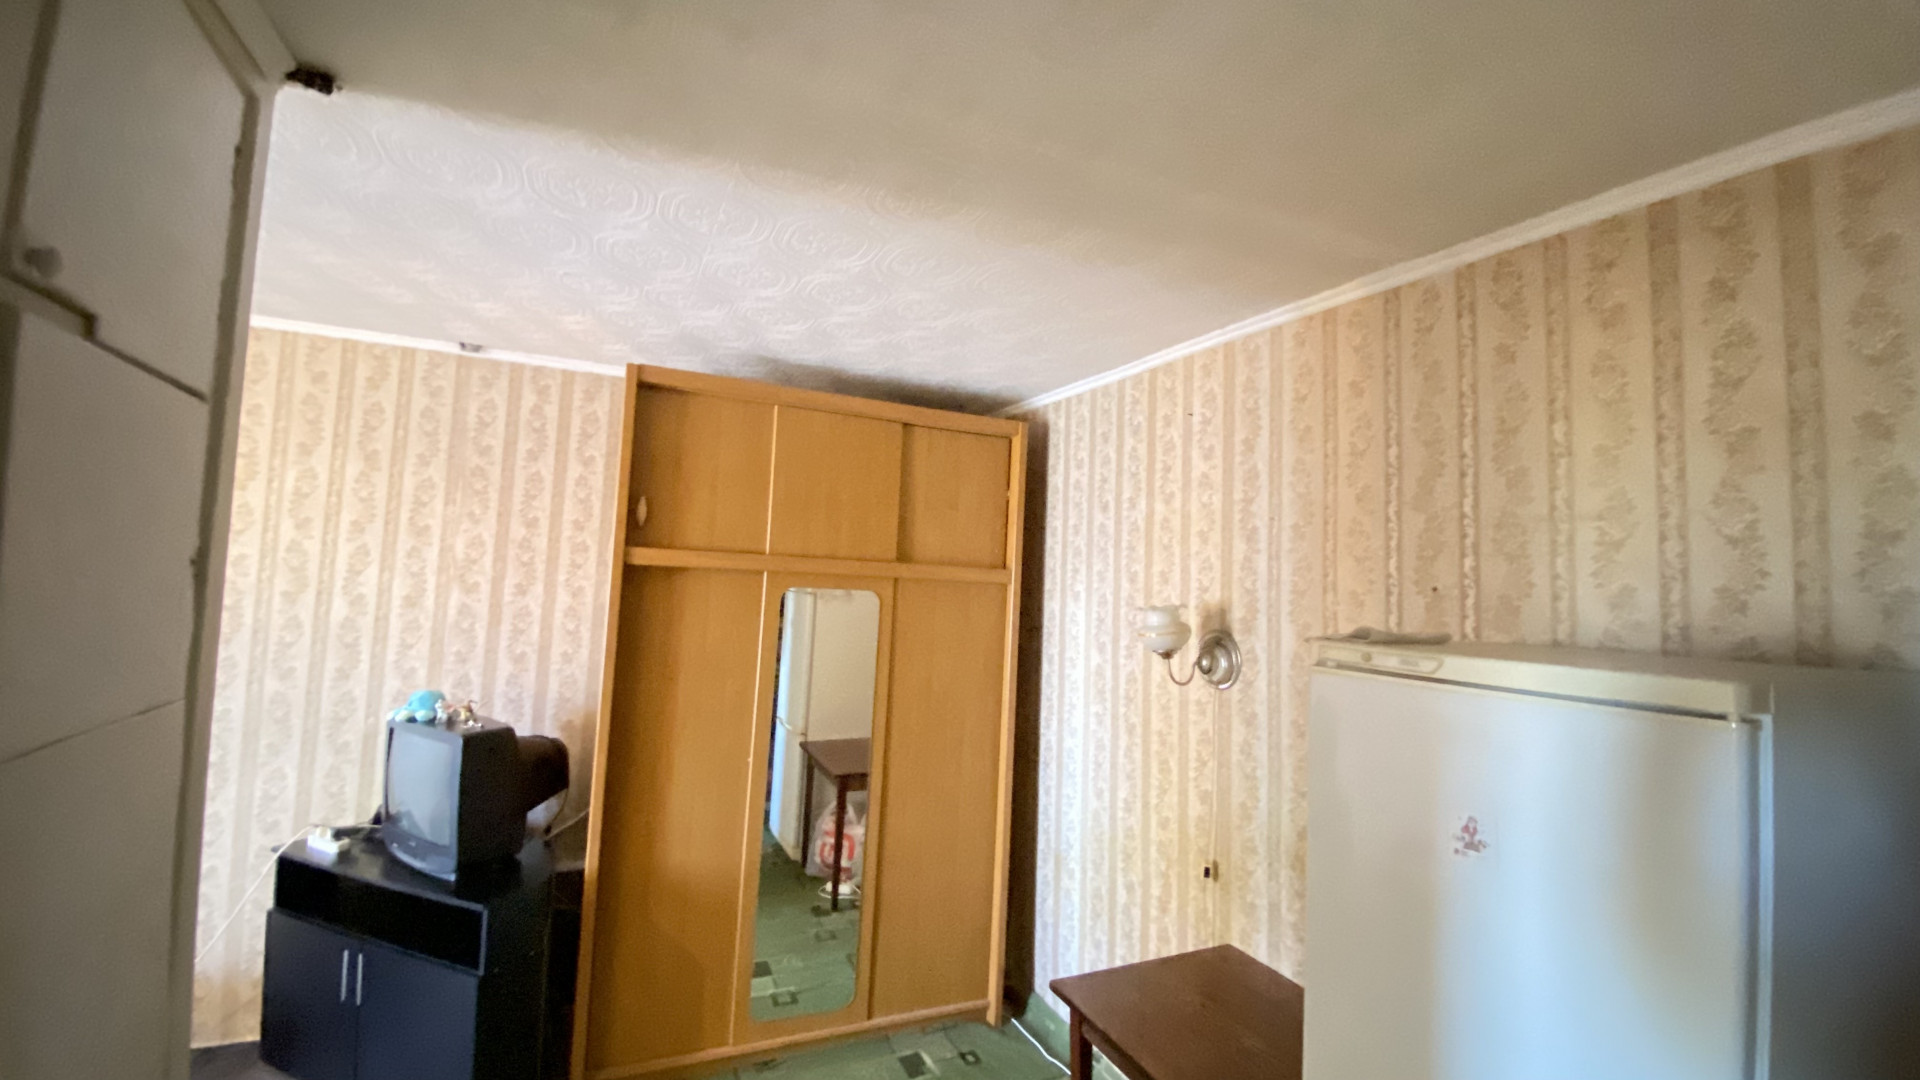 Квартира 2 комнатная в Майкоп г. район Черемушки р-н